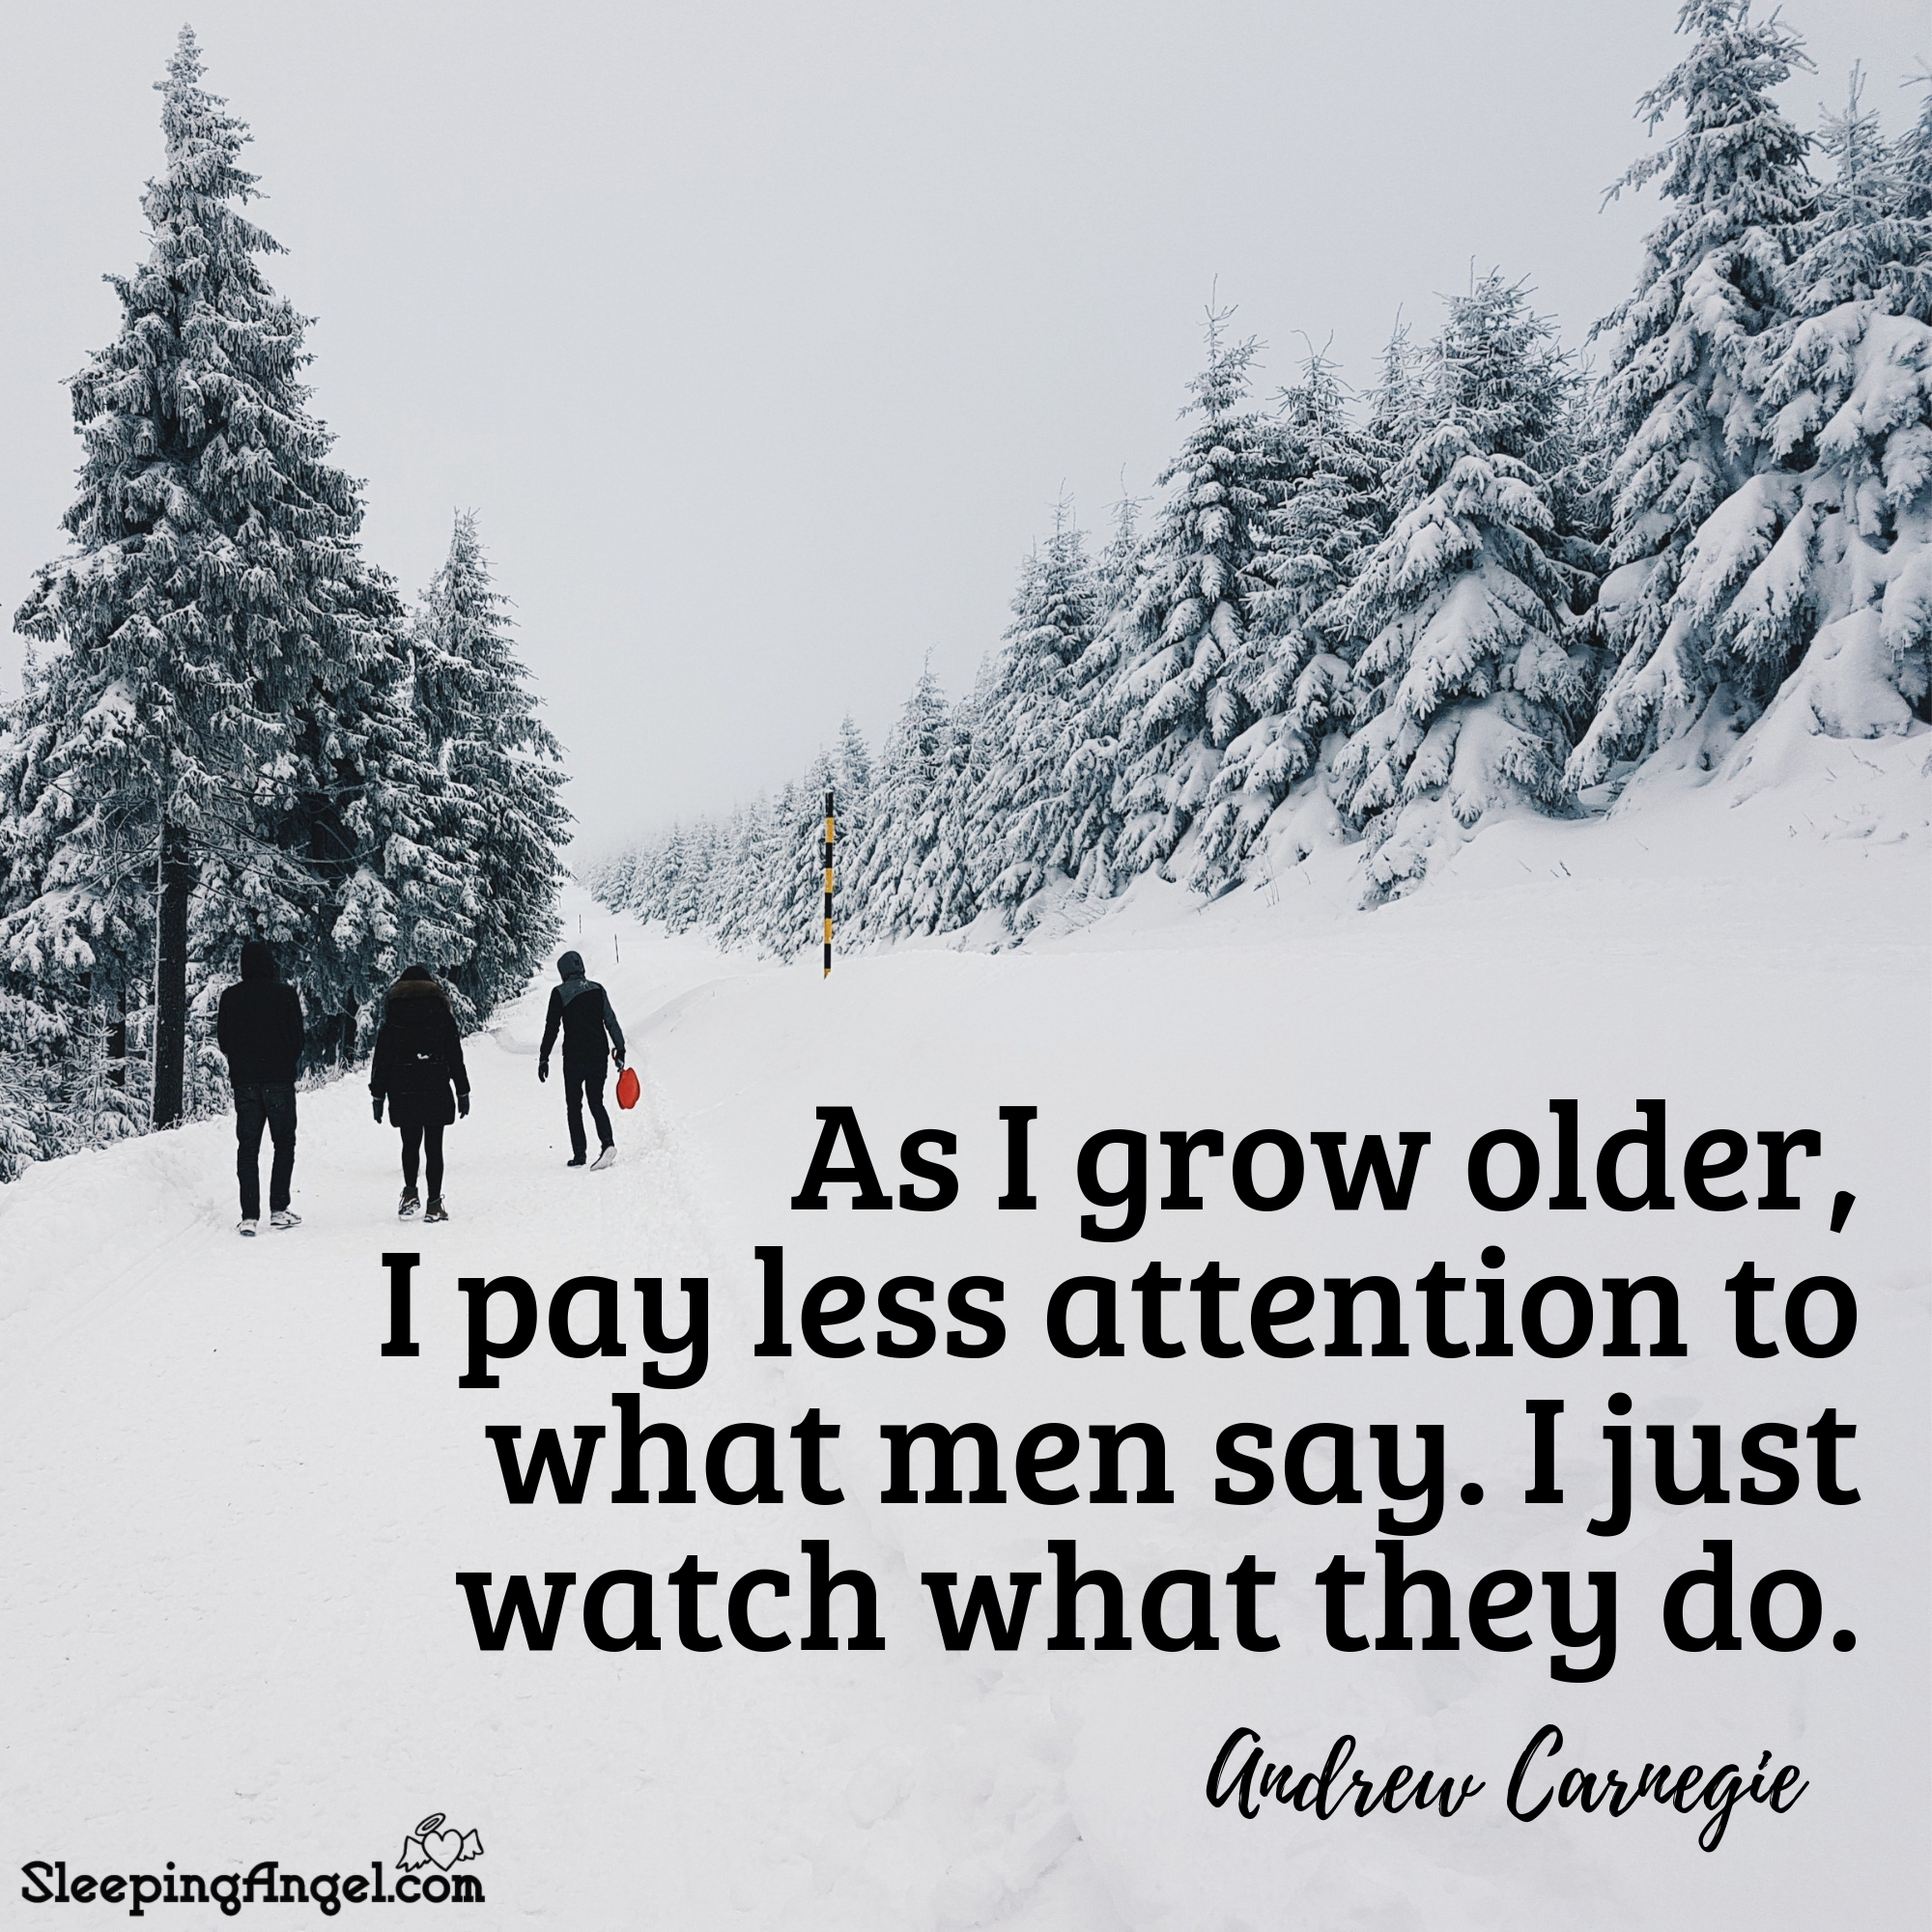 Andrew Carnegie Quote